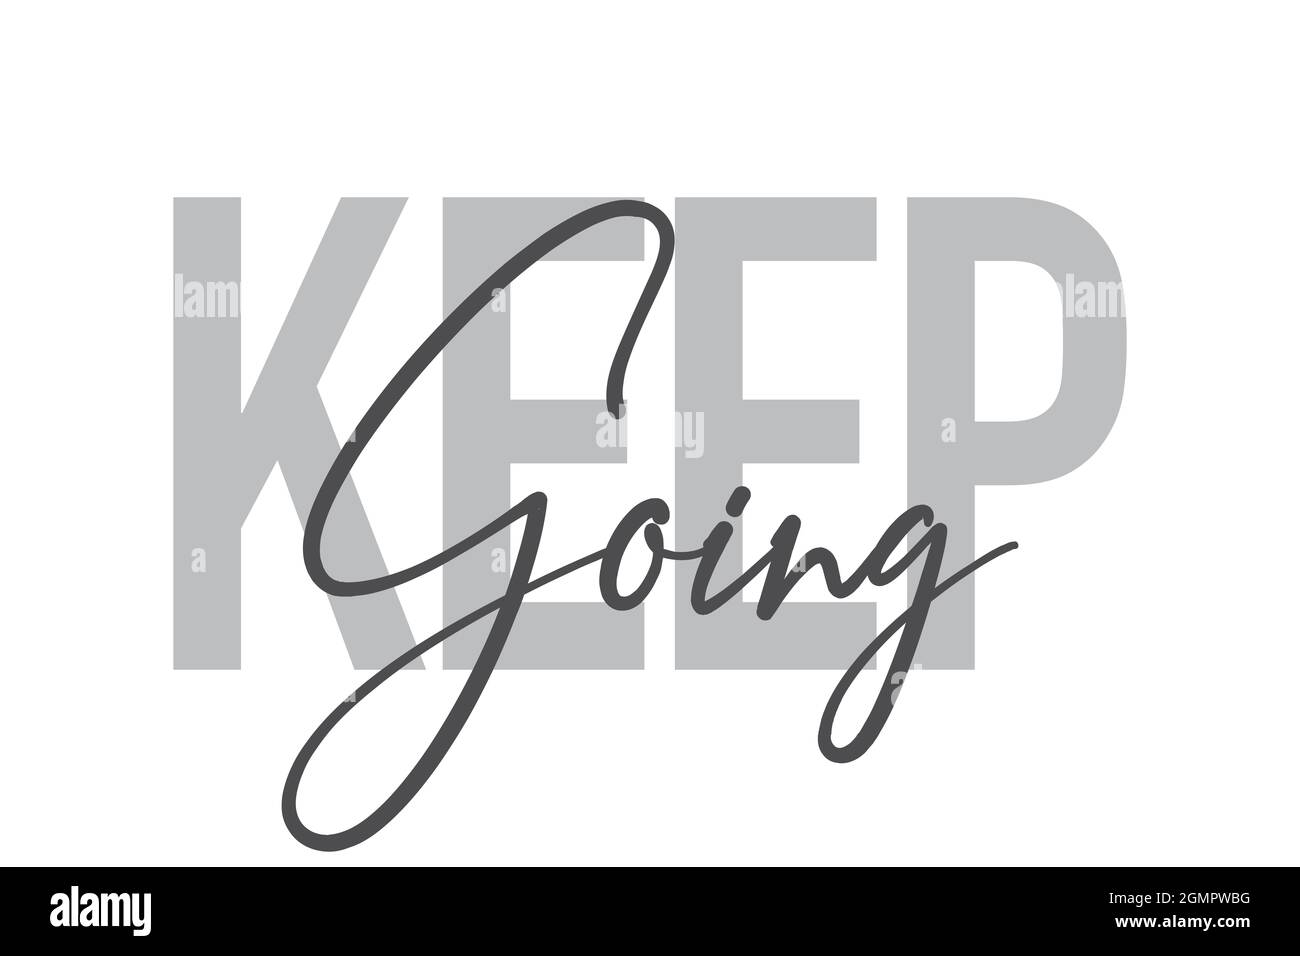 Modernes, einfaches, minimalistisches typografisches Design eines Sprichwort „Keep Going“ in Grautönen. Coole, urbane, trendige und verspielte Grafik-Vektorgrafik mit ha Stockfoto